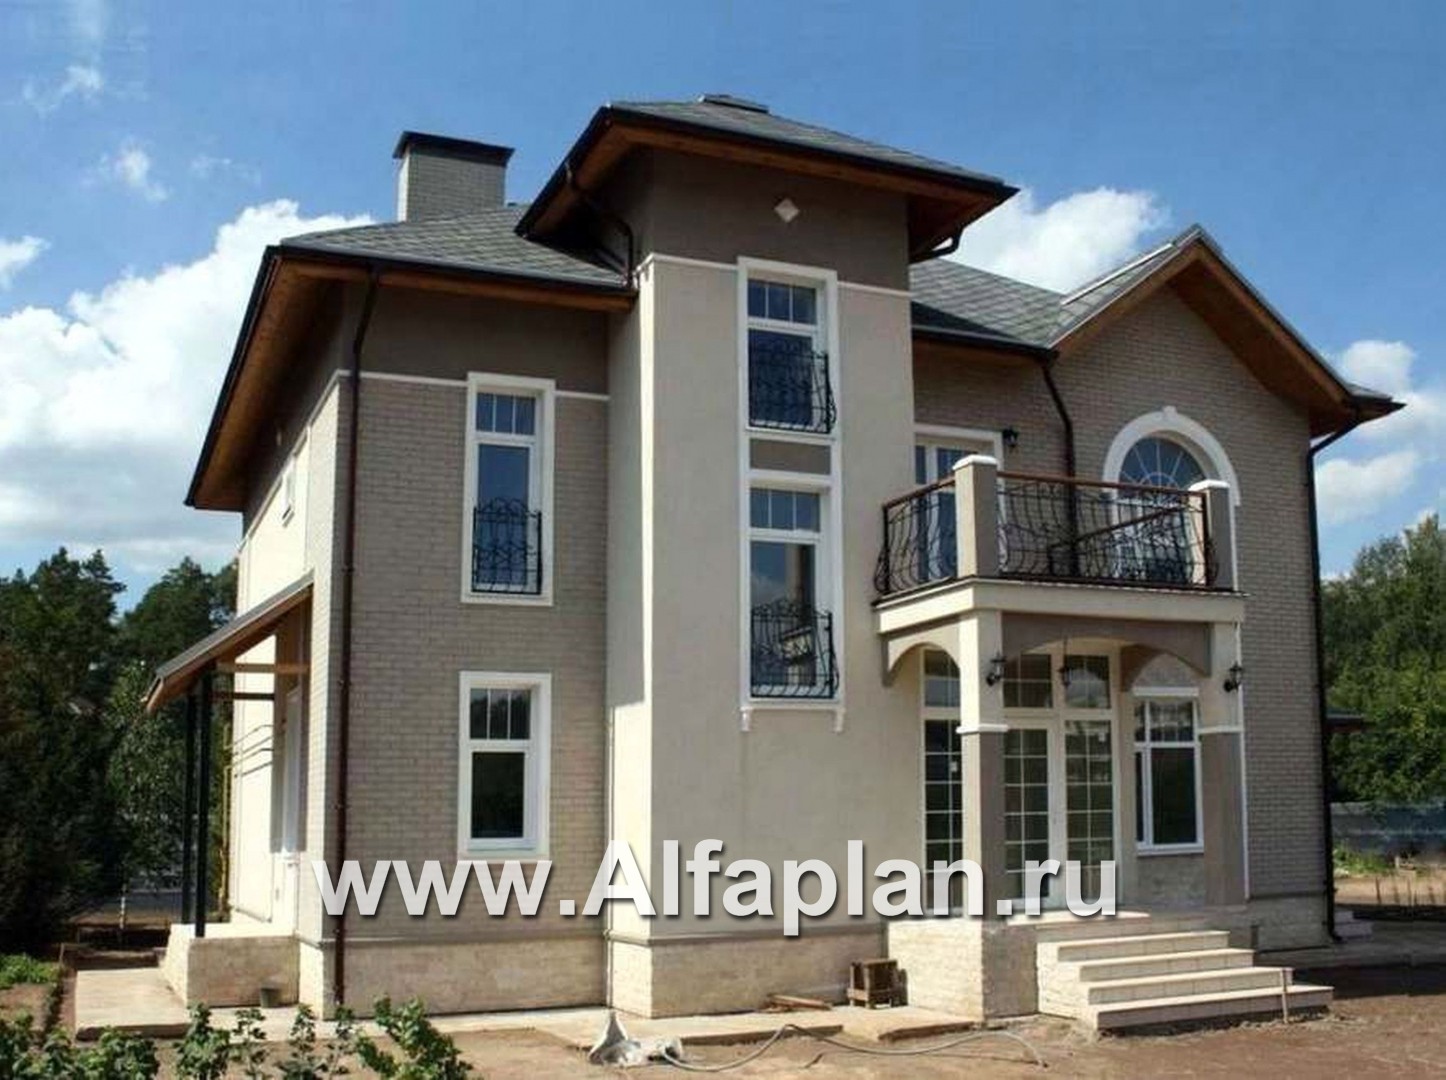 Проекты домов Альфаплан - «Разумовский» - красивый коттедж с элементами стиля модерн - дополнительное изображение №3